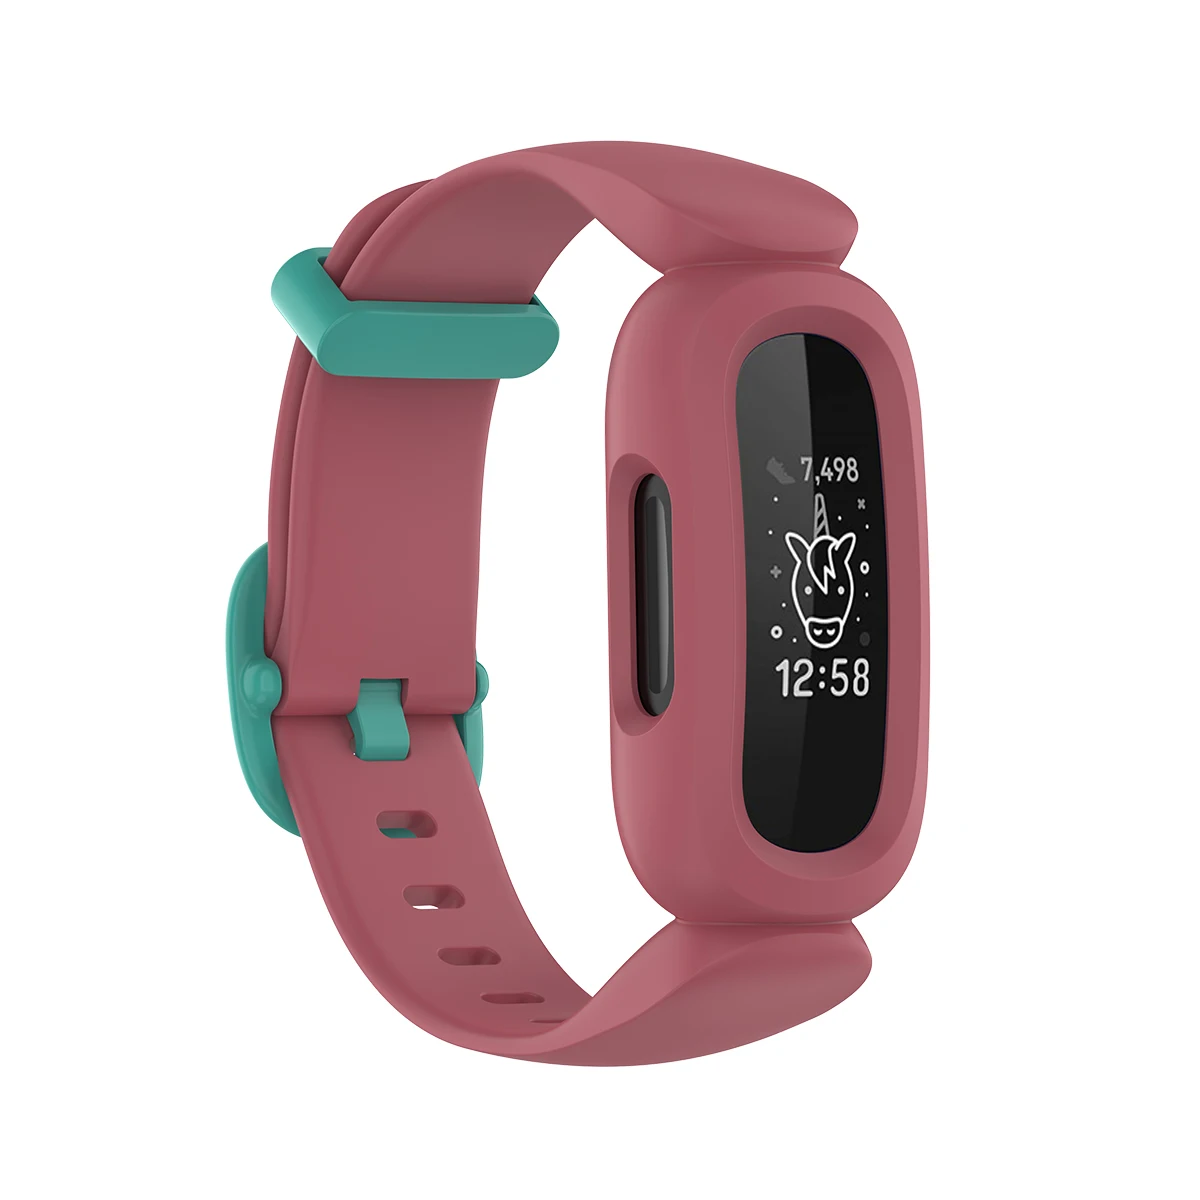 Сменный Ремешок Для детских Умных часов Fitbit ACE 2 ACE 3, Силиконовый Браслет Для часов Fitbit Inspire, Ремешок Для часов Inspire HR